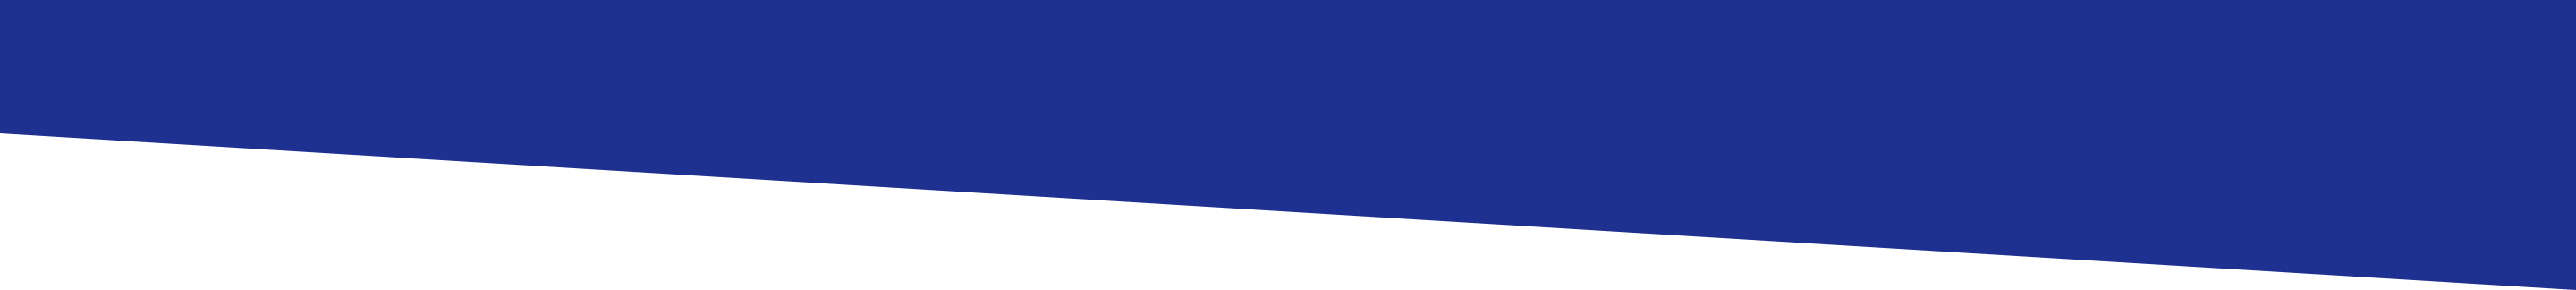 Bandeau oblique de couleur bleue